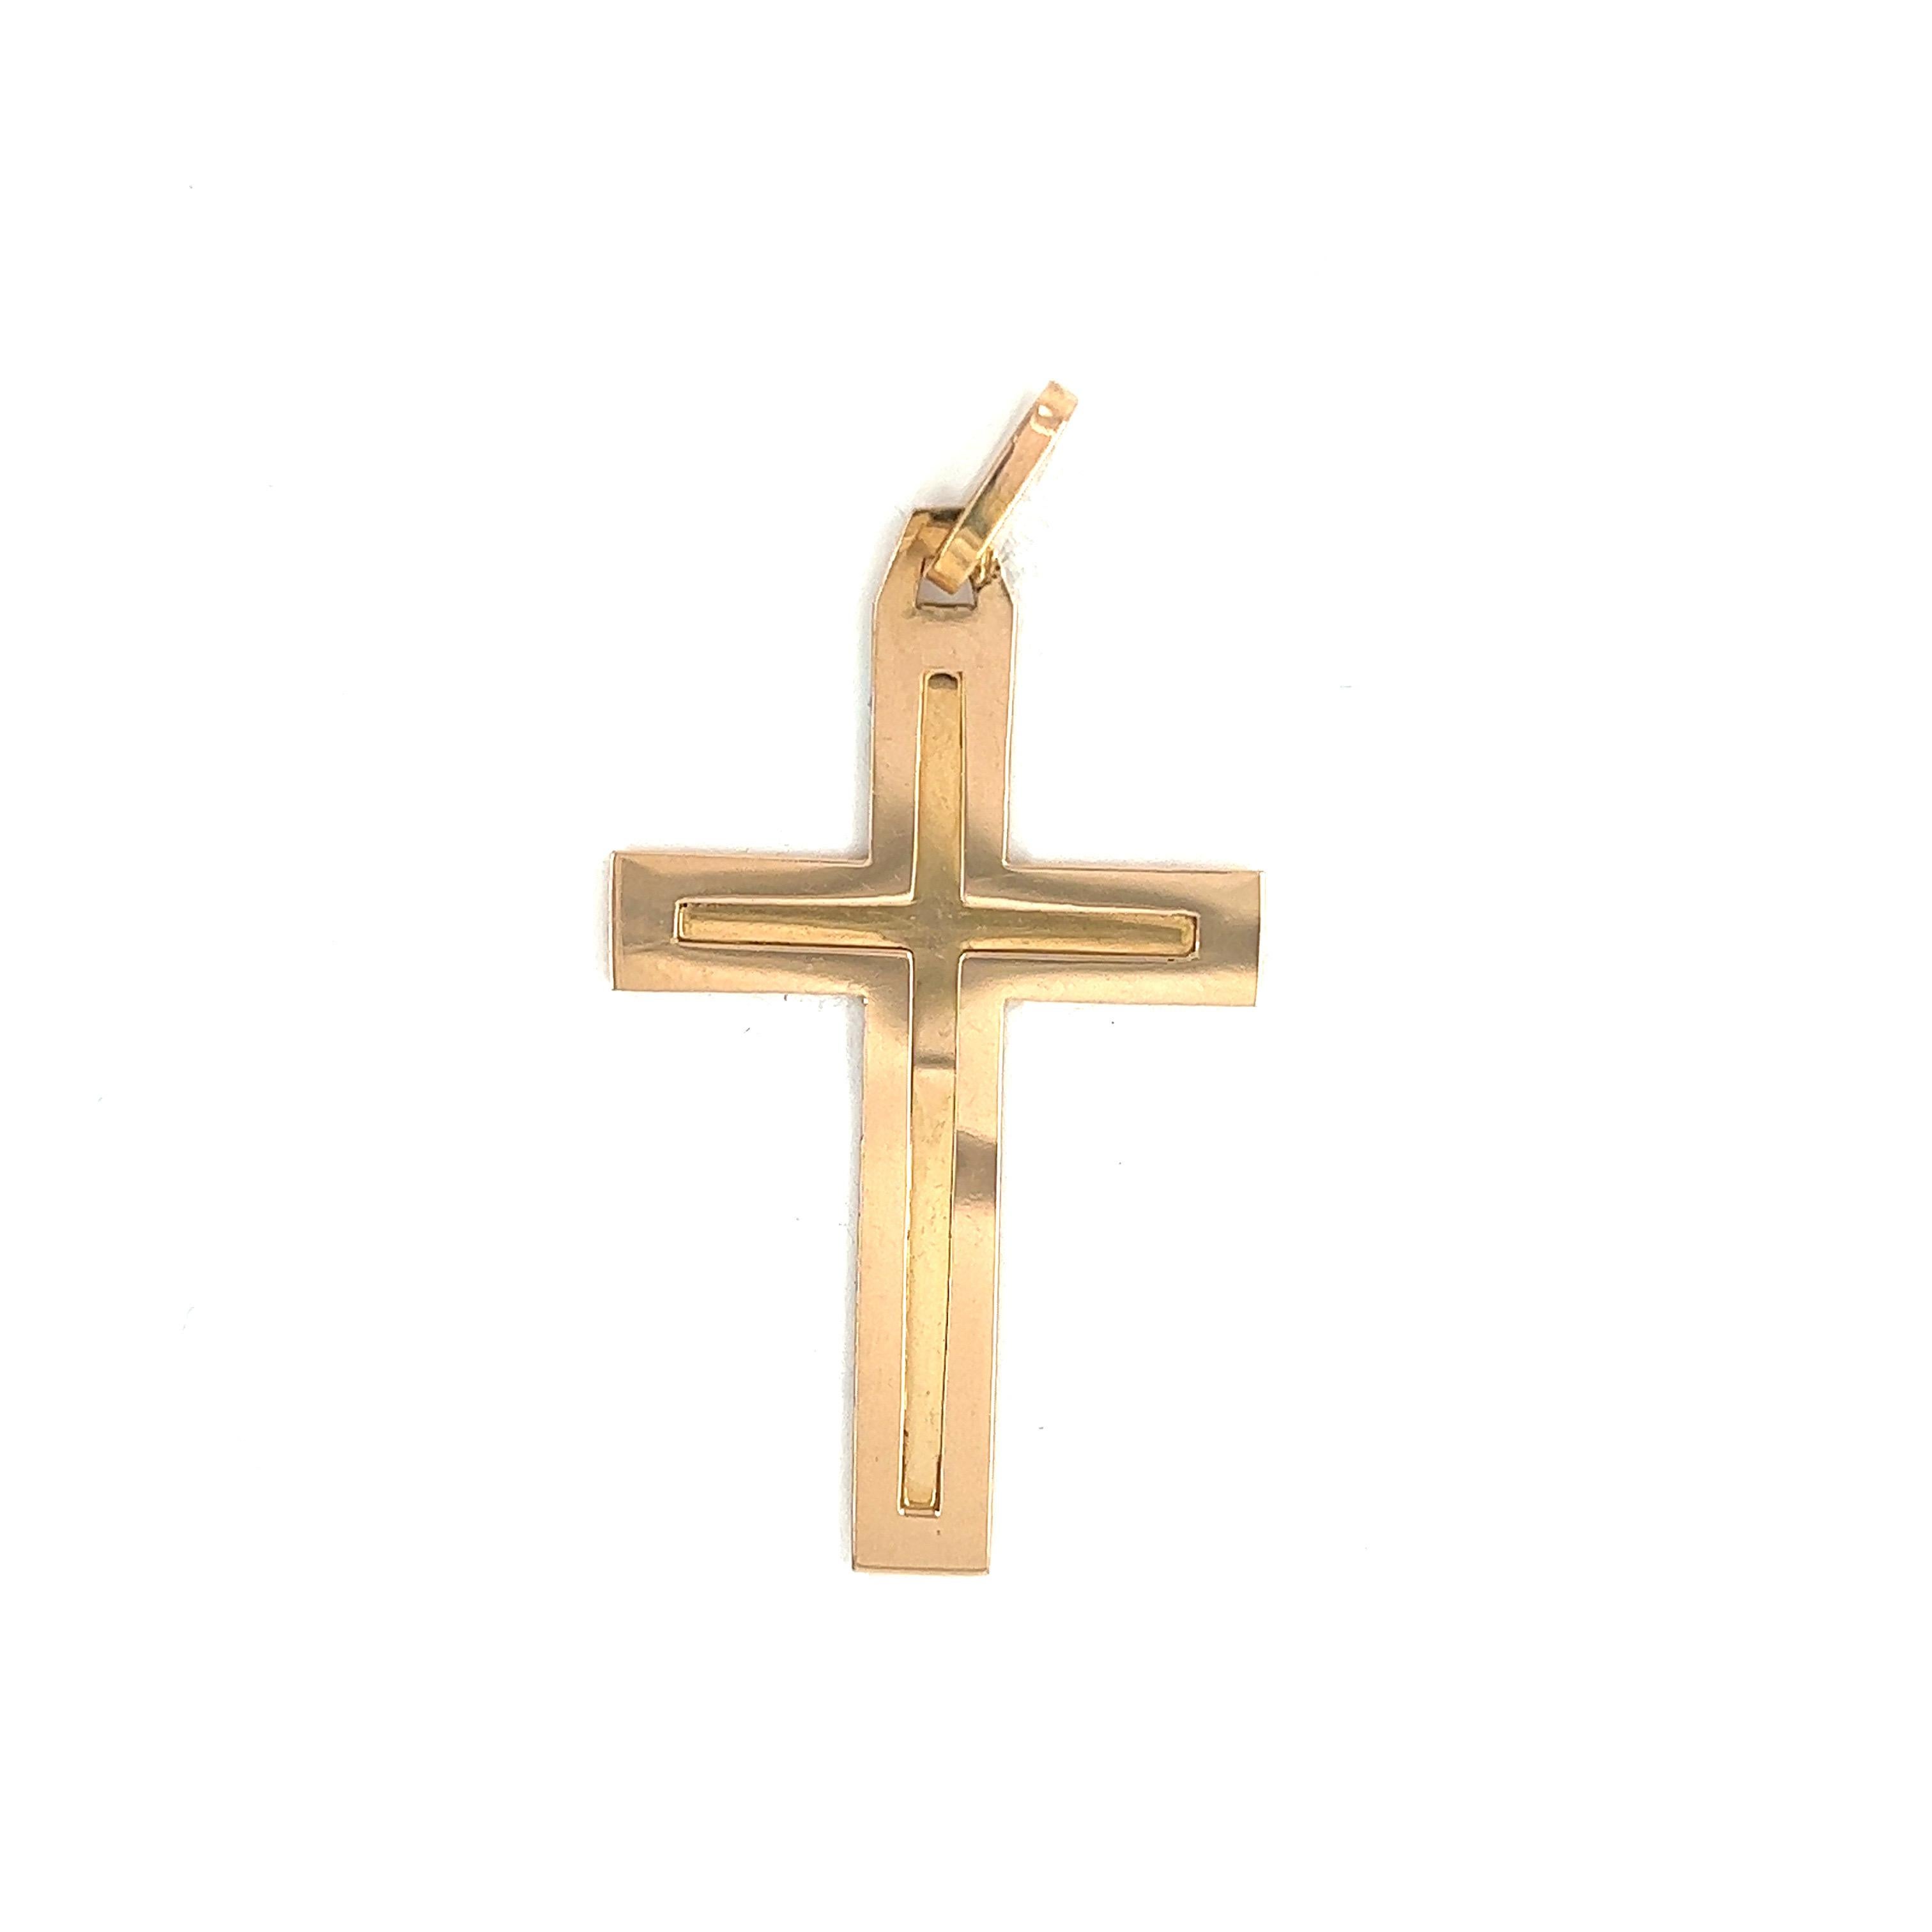 Art-Deco Religious Cross Double-Sided Gold 18 Karat 

Ce pendentif en forme de croix en or 18 carats est une pièce de bijouterie religieuse exquise qui ravira les amateurs de bijoux en quête de pièces uniques. Le design est particulièrement